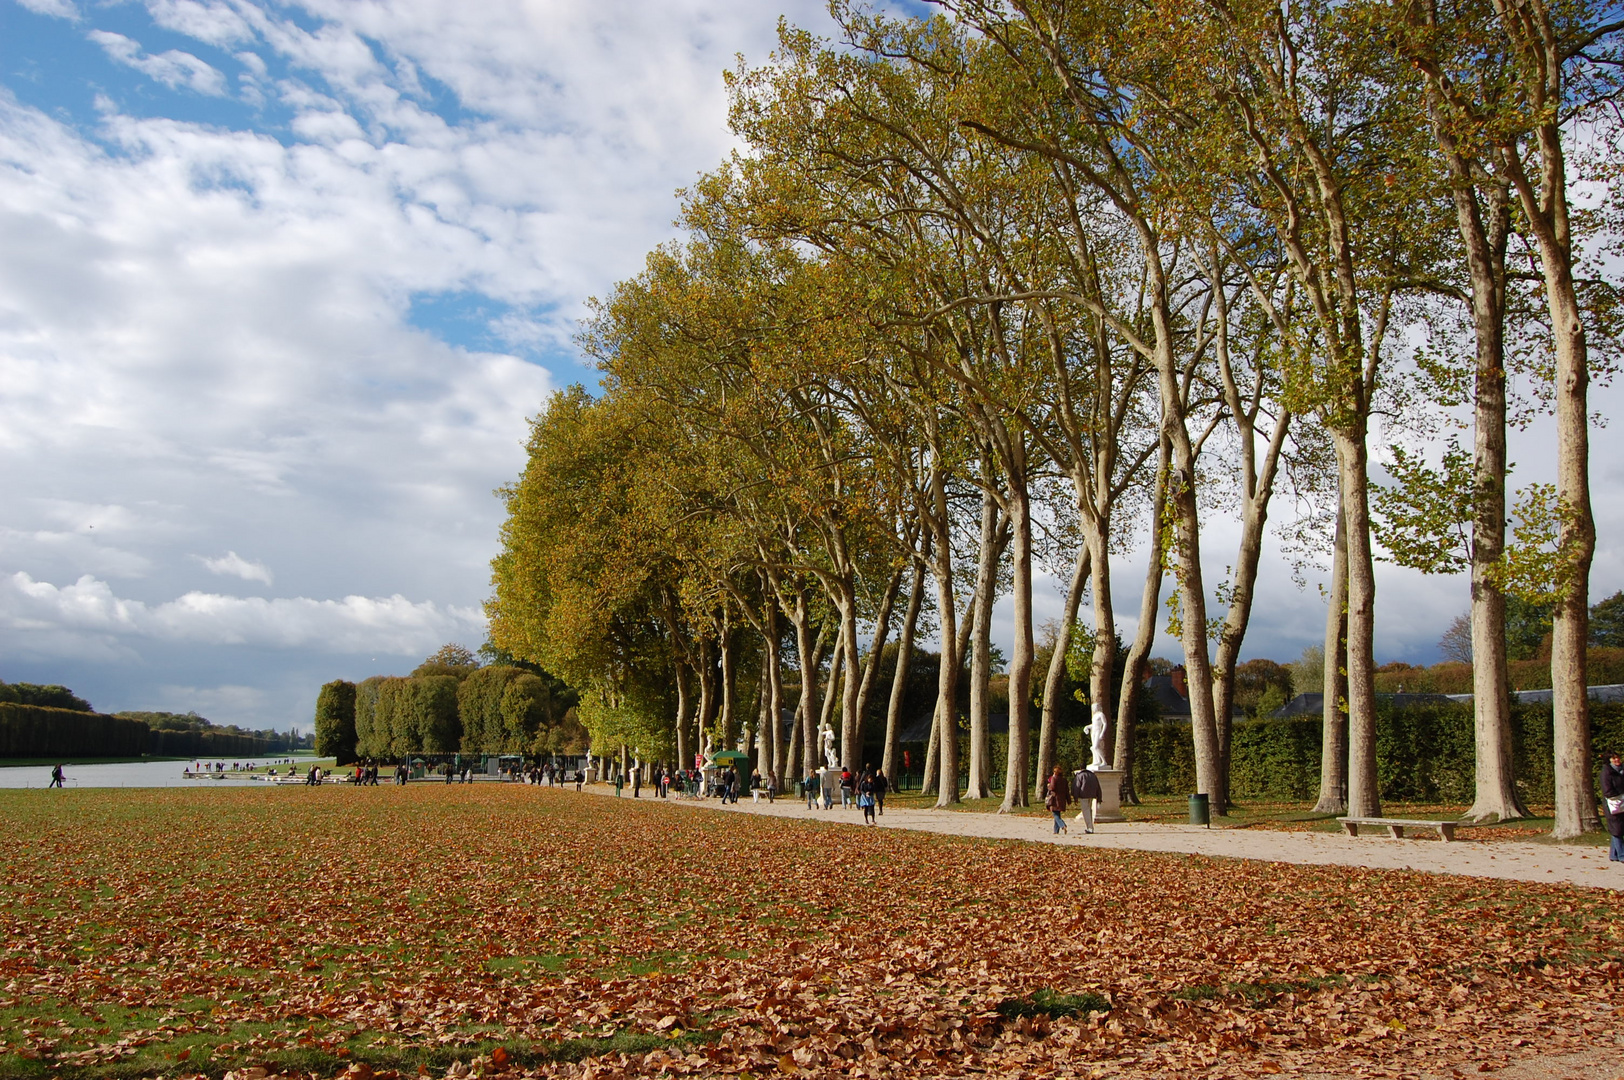 Jardins de Versailles